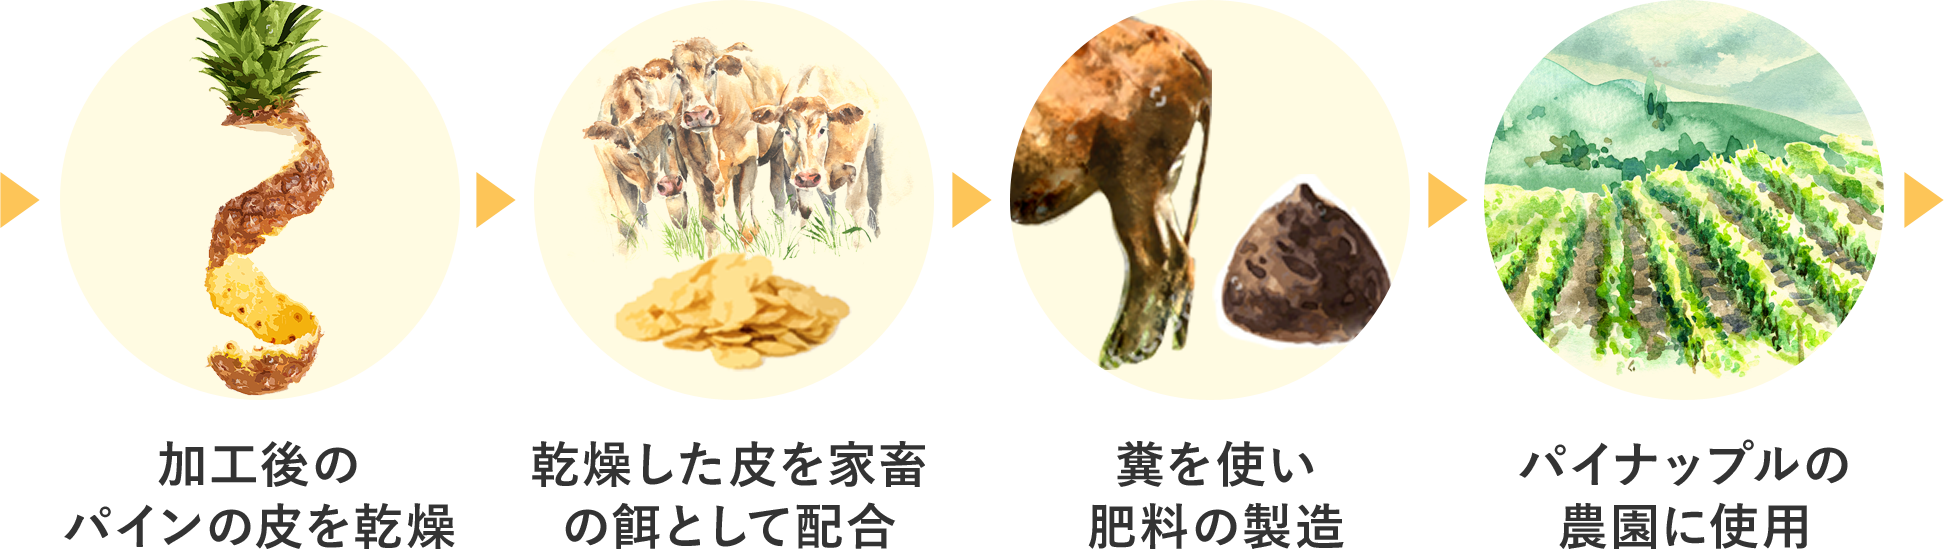 加工後のパインの皮を乾燥 乾燥した皮を家畜の餌として配合 糞を使い肥料の製造 パイナップルの農園に使用